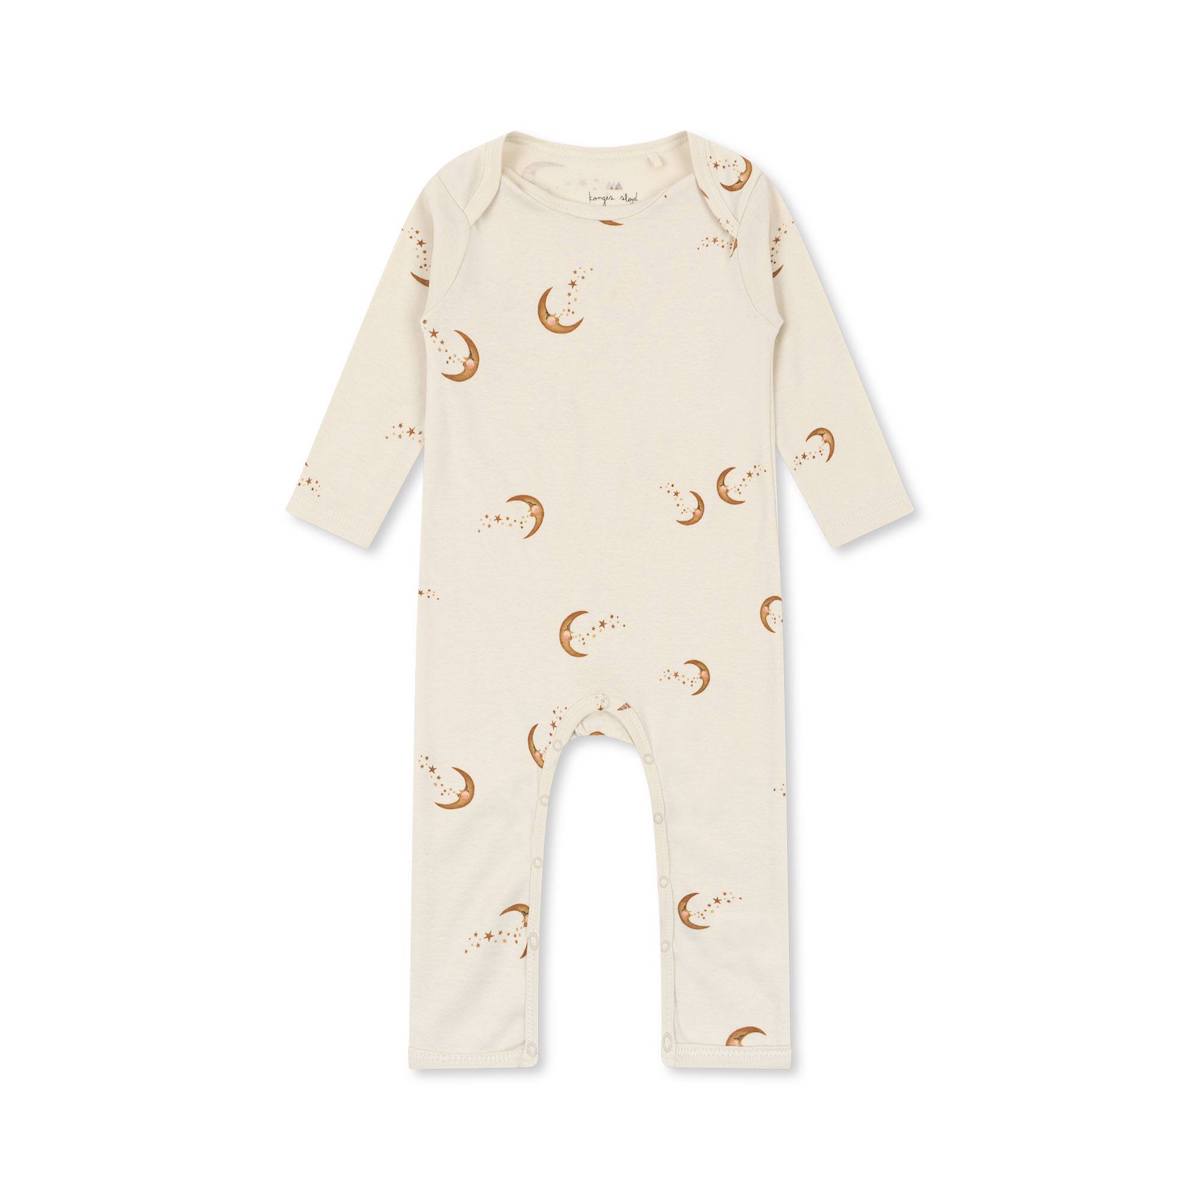 De Konges Slojd classic onesie moon is een fijn boxpakje voor je kindje. De baby onesie heeft een leuke print met maantjes en is gemaakt van 100% biologisch katoen. VanZus.